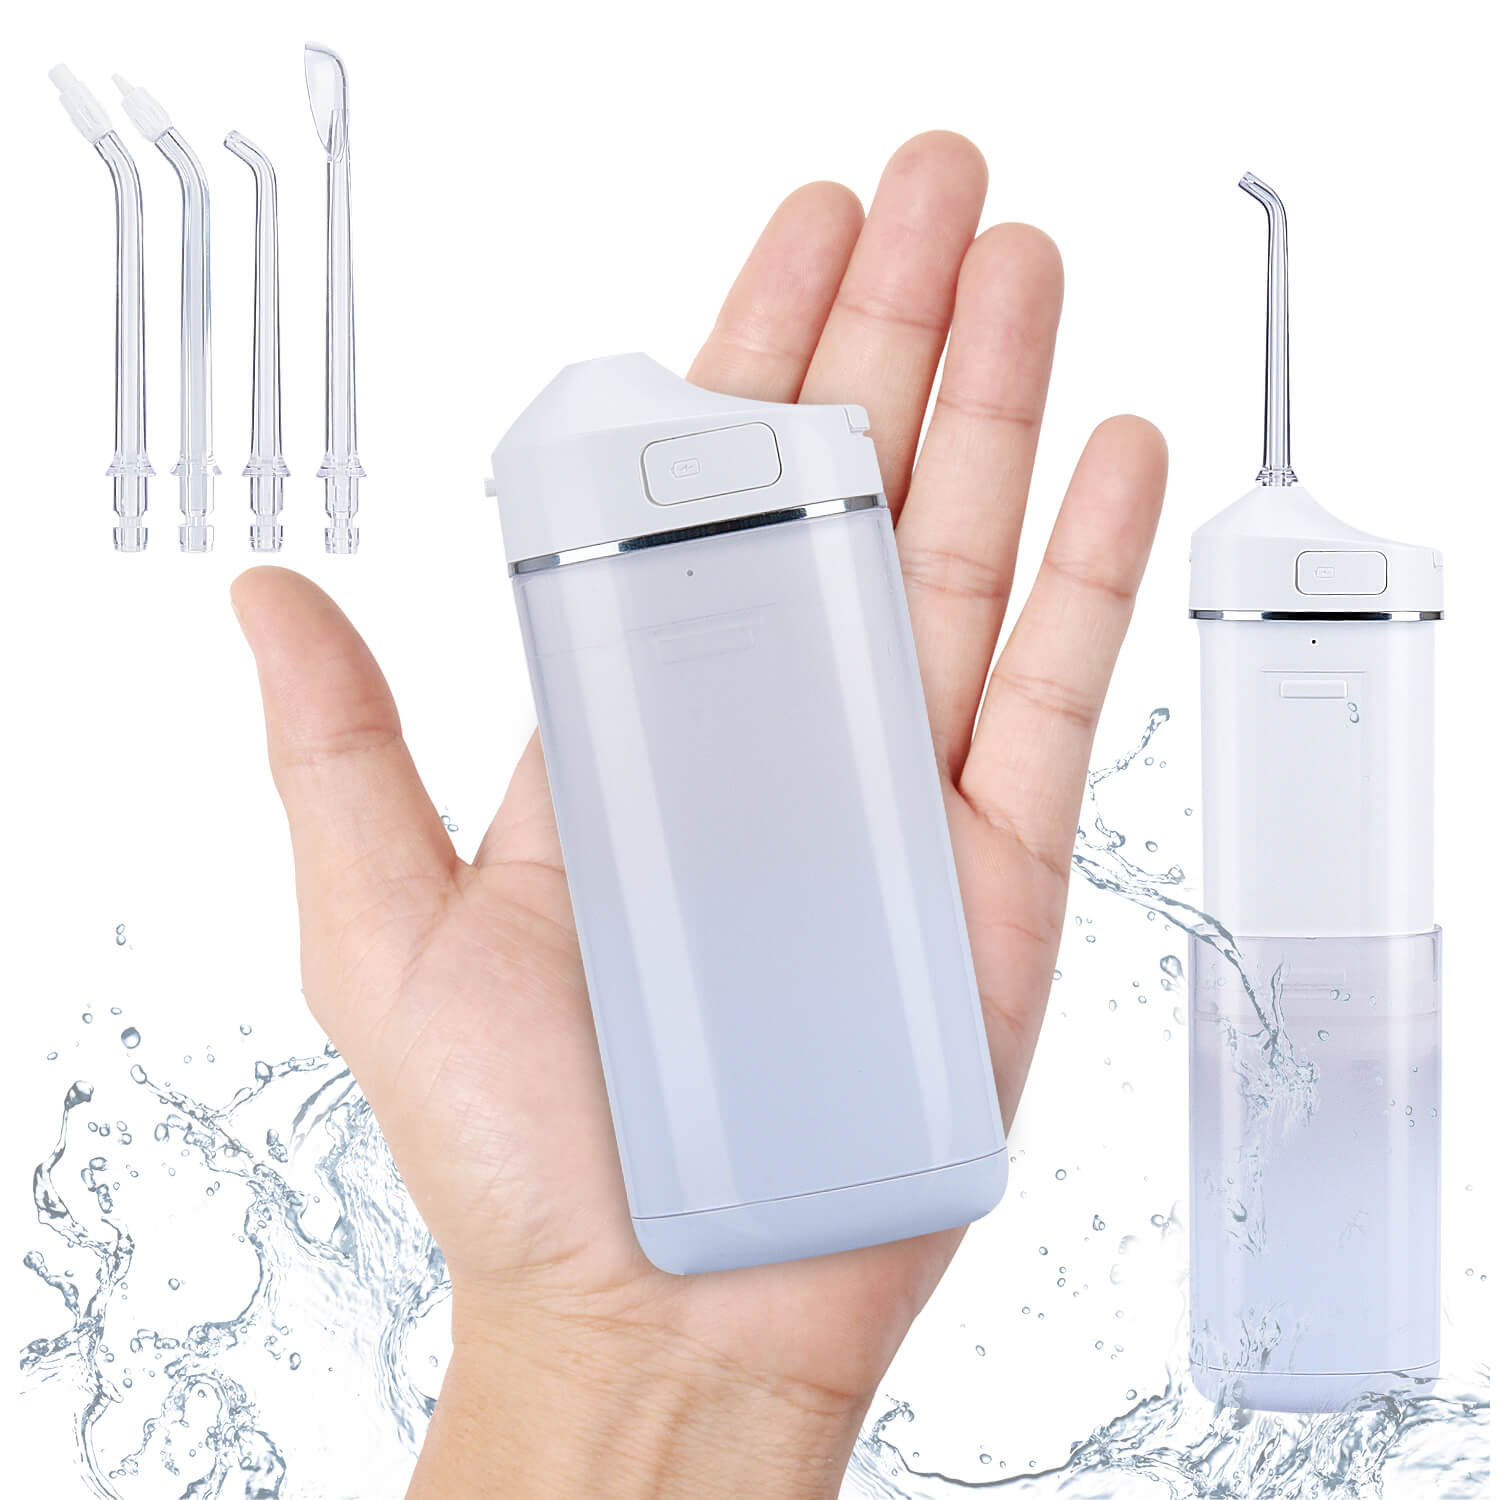 Water Flosser Oral Irrigator Water Teeth Cleaner Pick, Home & Travel Water Flossers for Teeth, Braces Bridges Care